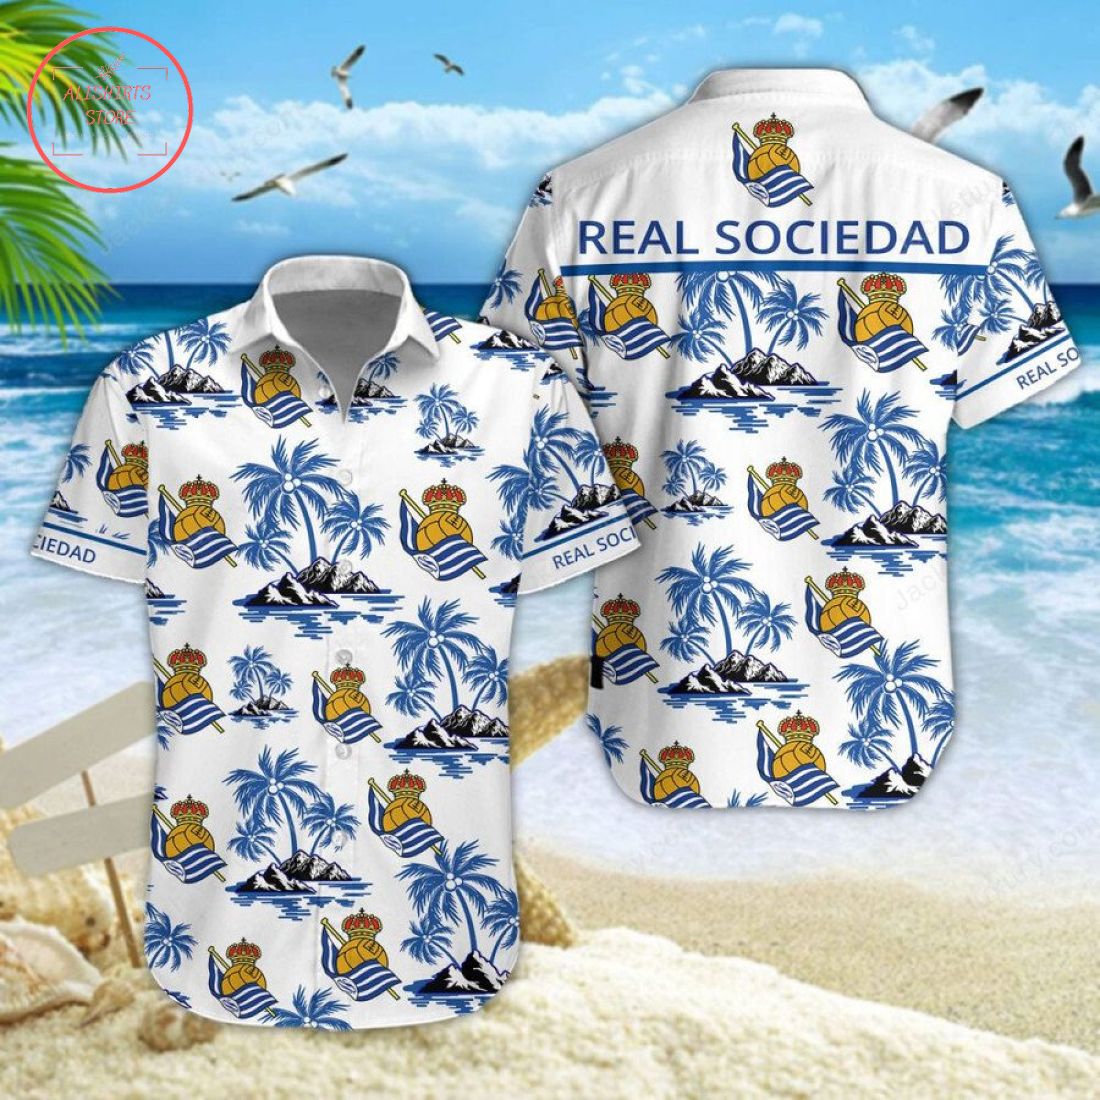 Real Sociedad Hawaiian Shirt and Shorts